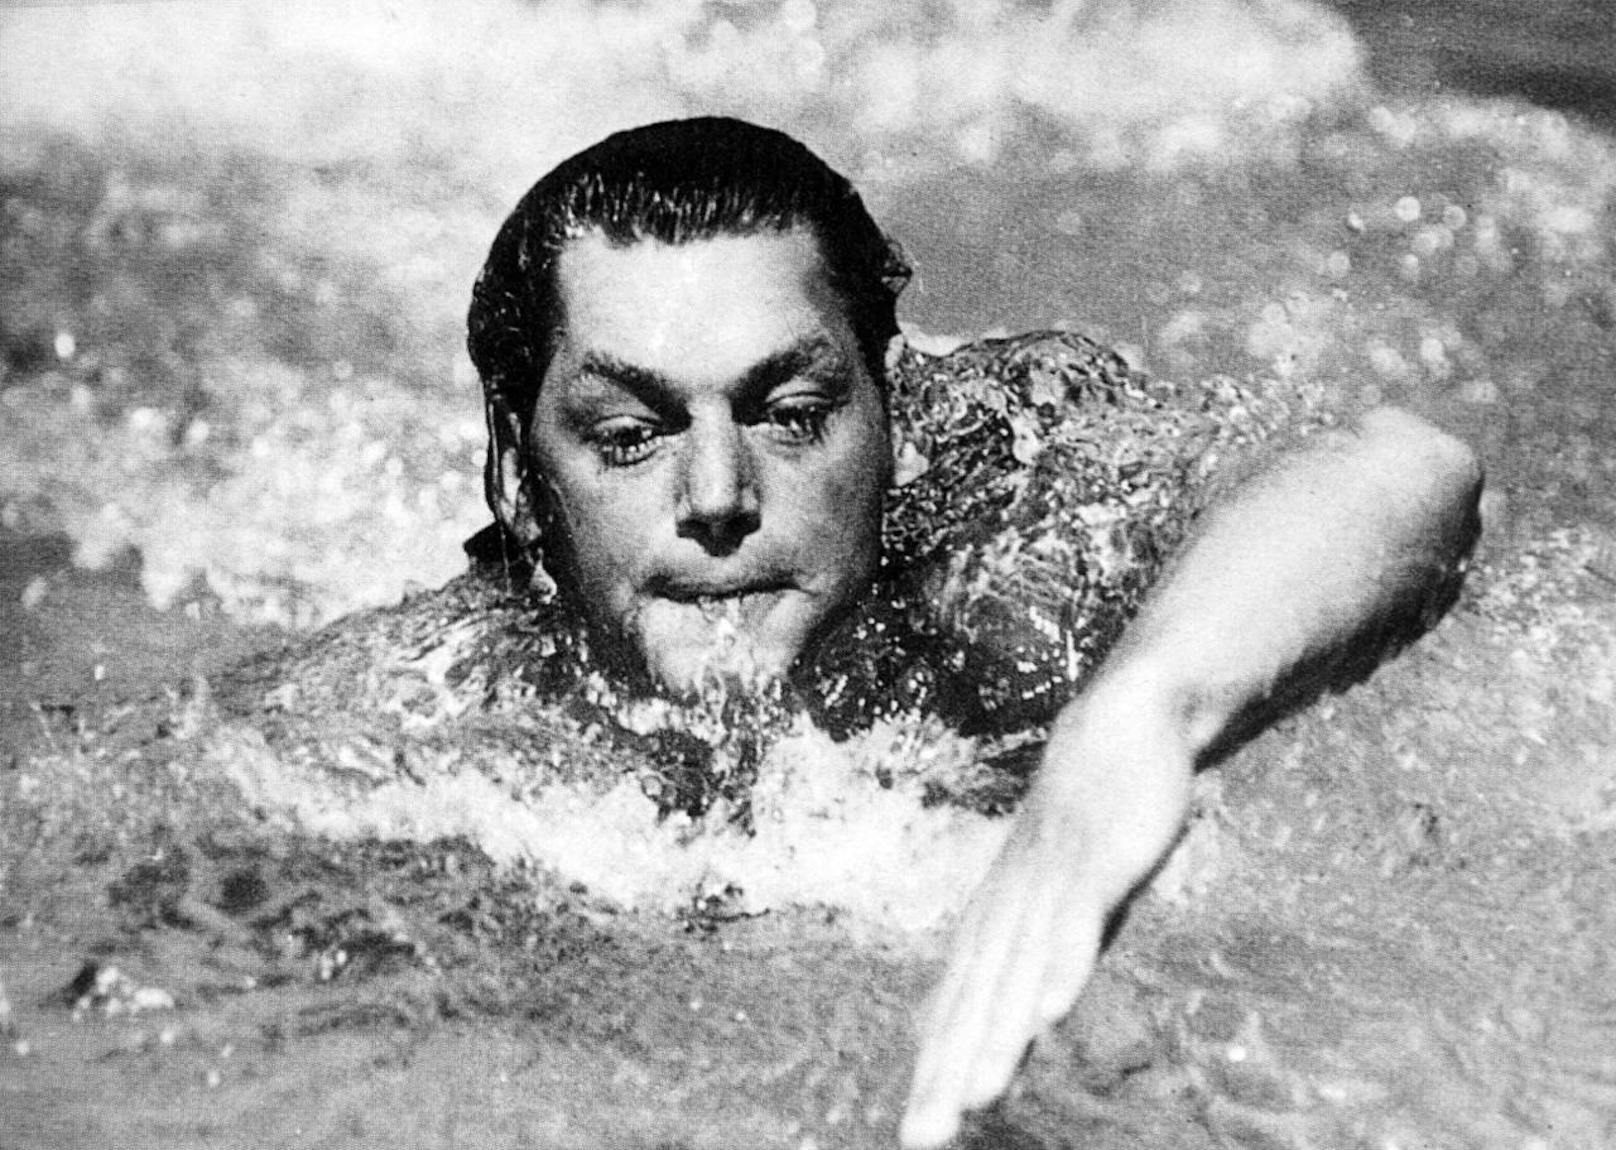 <b>Schwimmen:</b> Johnny Weissmüller schwamm als erster Mensch die 100 Meter unter einer Minute. In seiner aktiven Laufbahn siegte er in jedem Wettkampf, zu dem er antrat. Nach fünf Olympia-Siegen stieg er ins Film-Geschäft ein und wurde als "Tarzan" legendär.